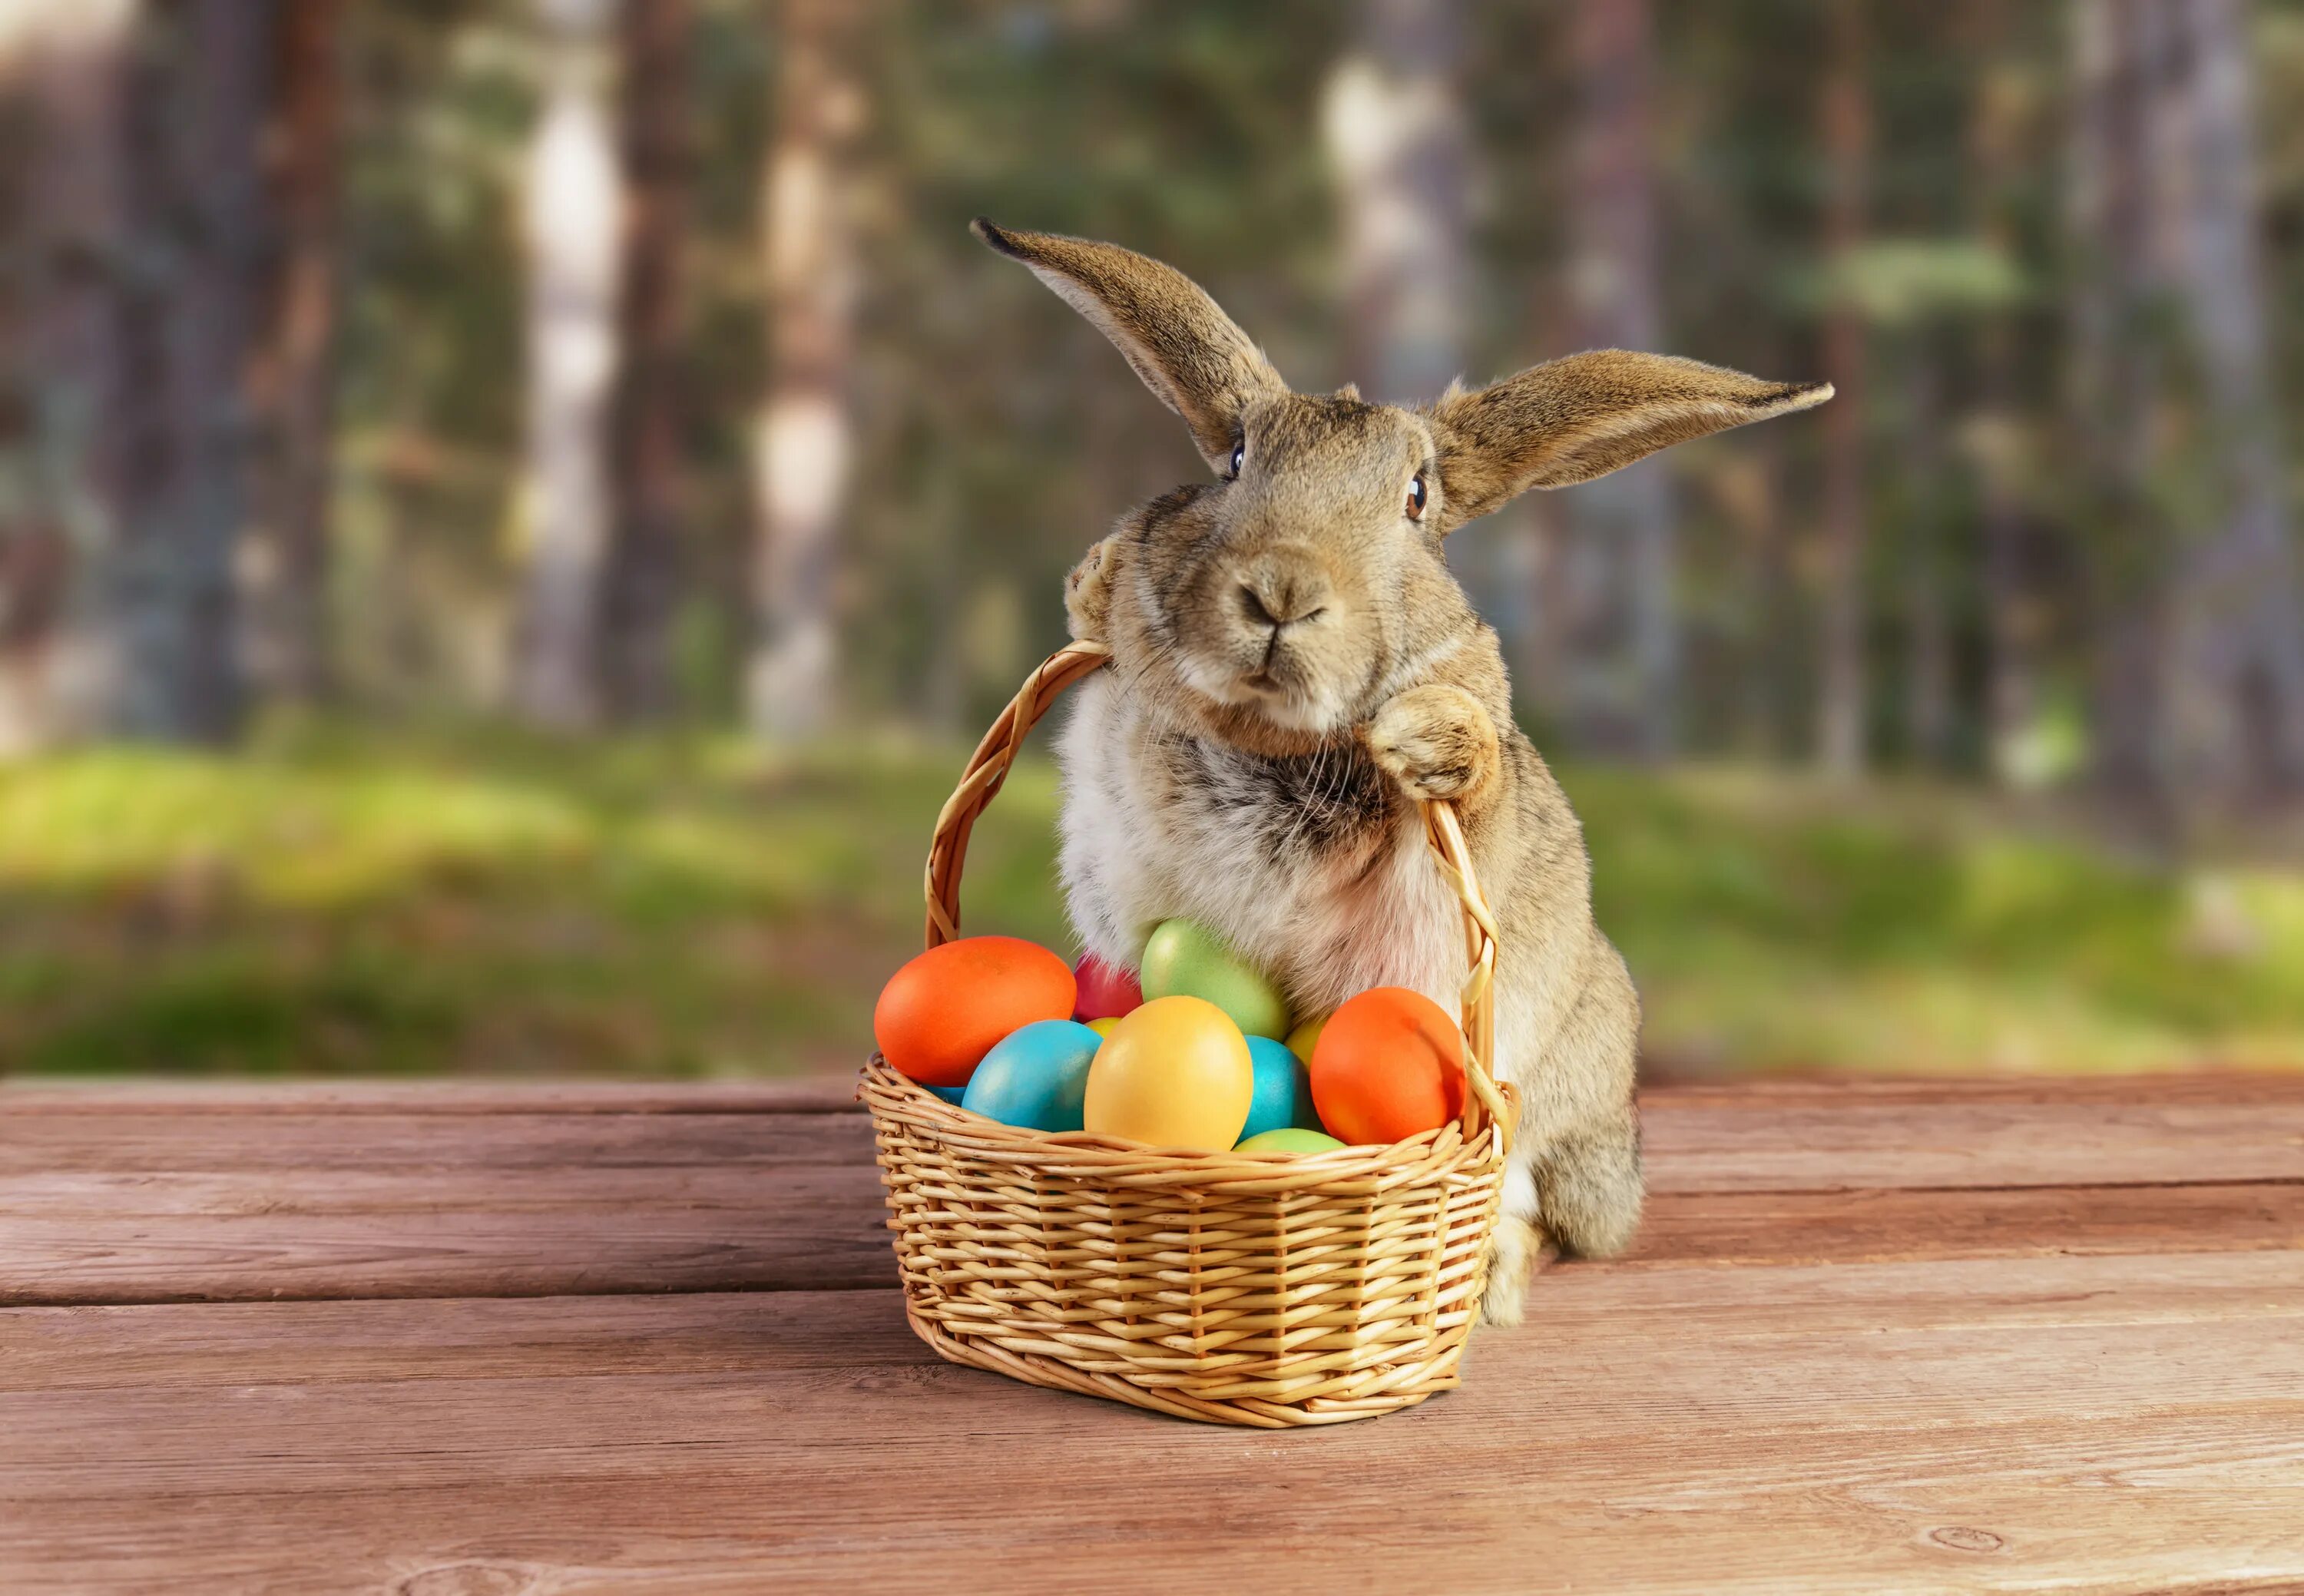 Символы пасхи пасхальный кролик. Кролик Bunny Пасхальный заяц. Easter Bunny — Пасхальный кролик. Пасхальный заяц (Osterhase). Пасхальный кролик с яйцами.